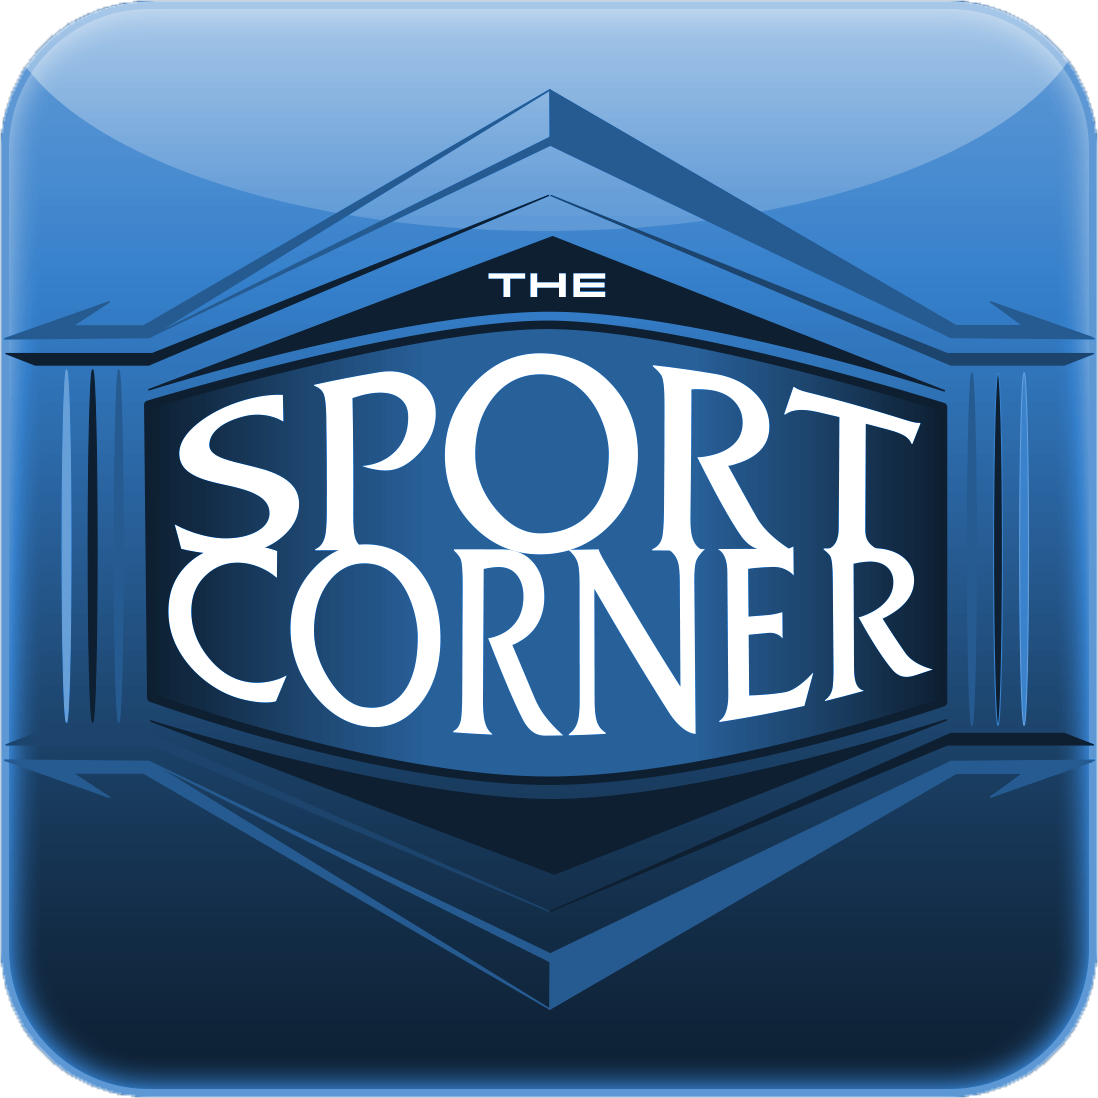 The Sport Corner - Sports Bar in Bangkok